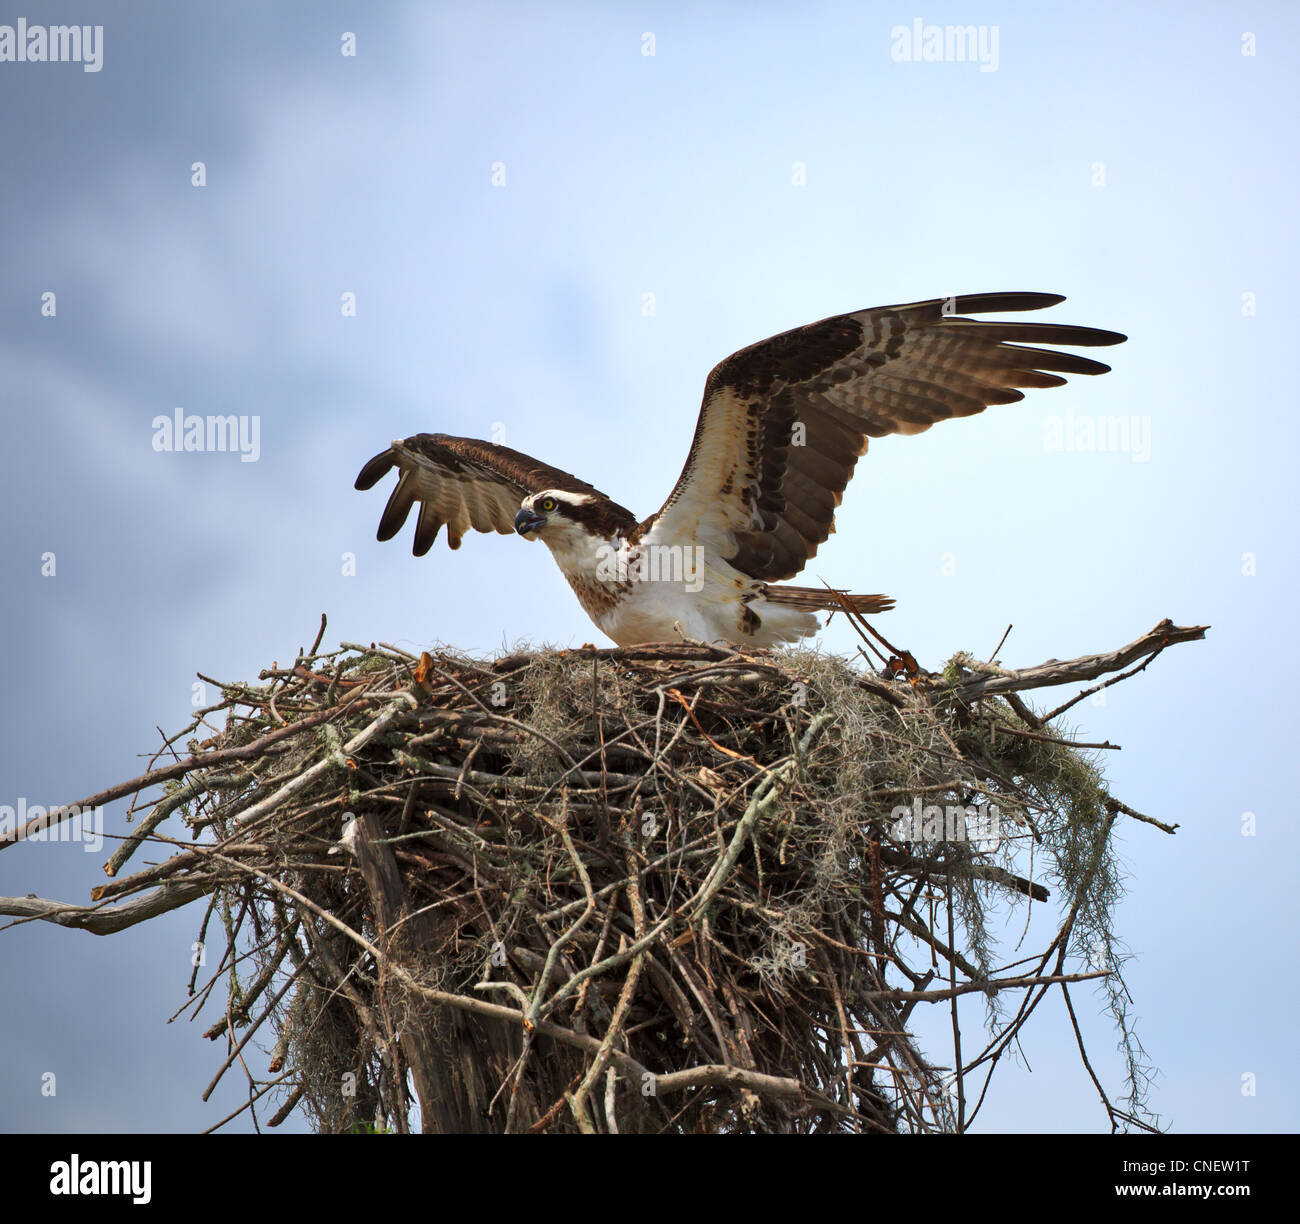 Osprey, Pandion haliaetus. Female landing on nest in the Atchafalaya River Basin, Louisiana Stock Photo